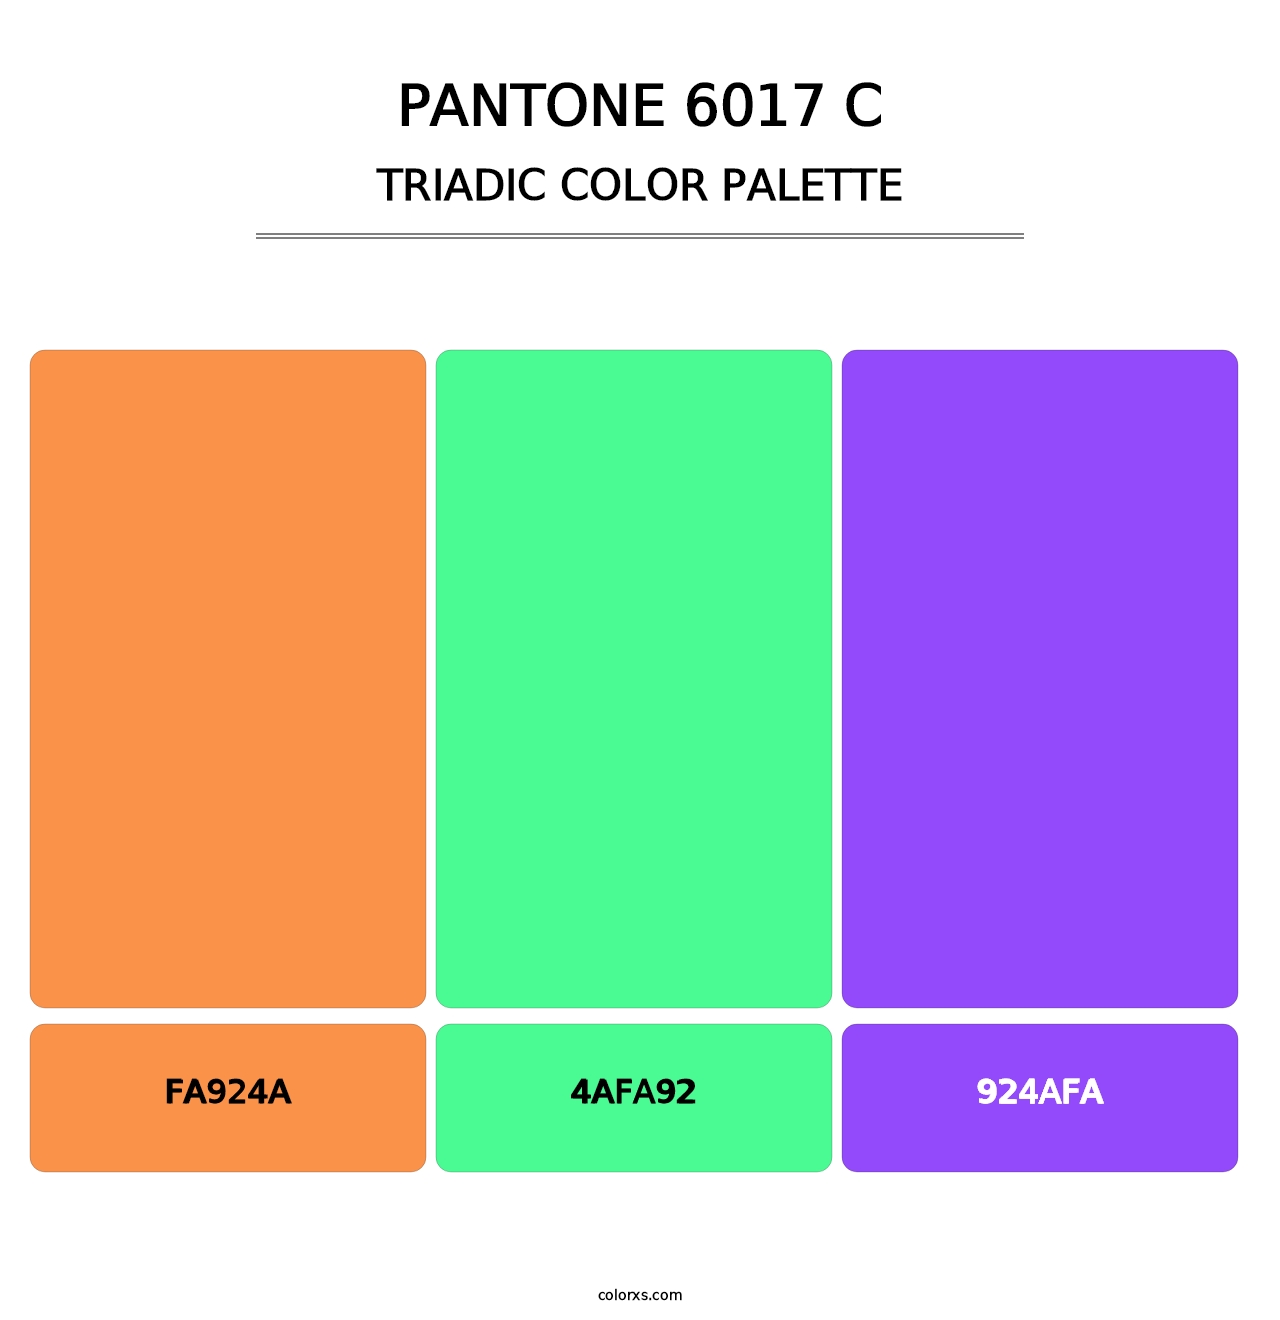 PANTONE 6017 C - Triadic Color Palette